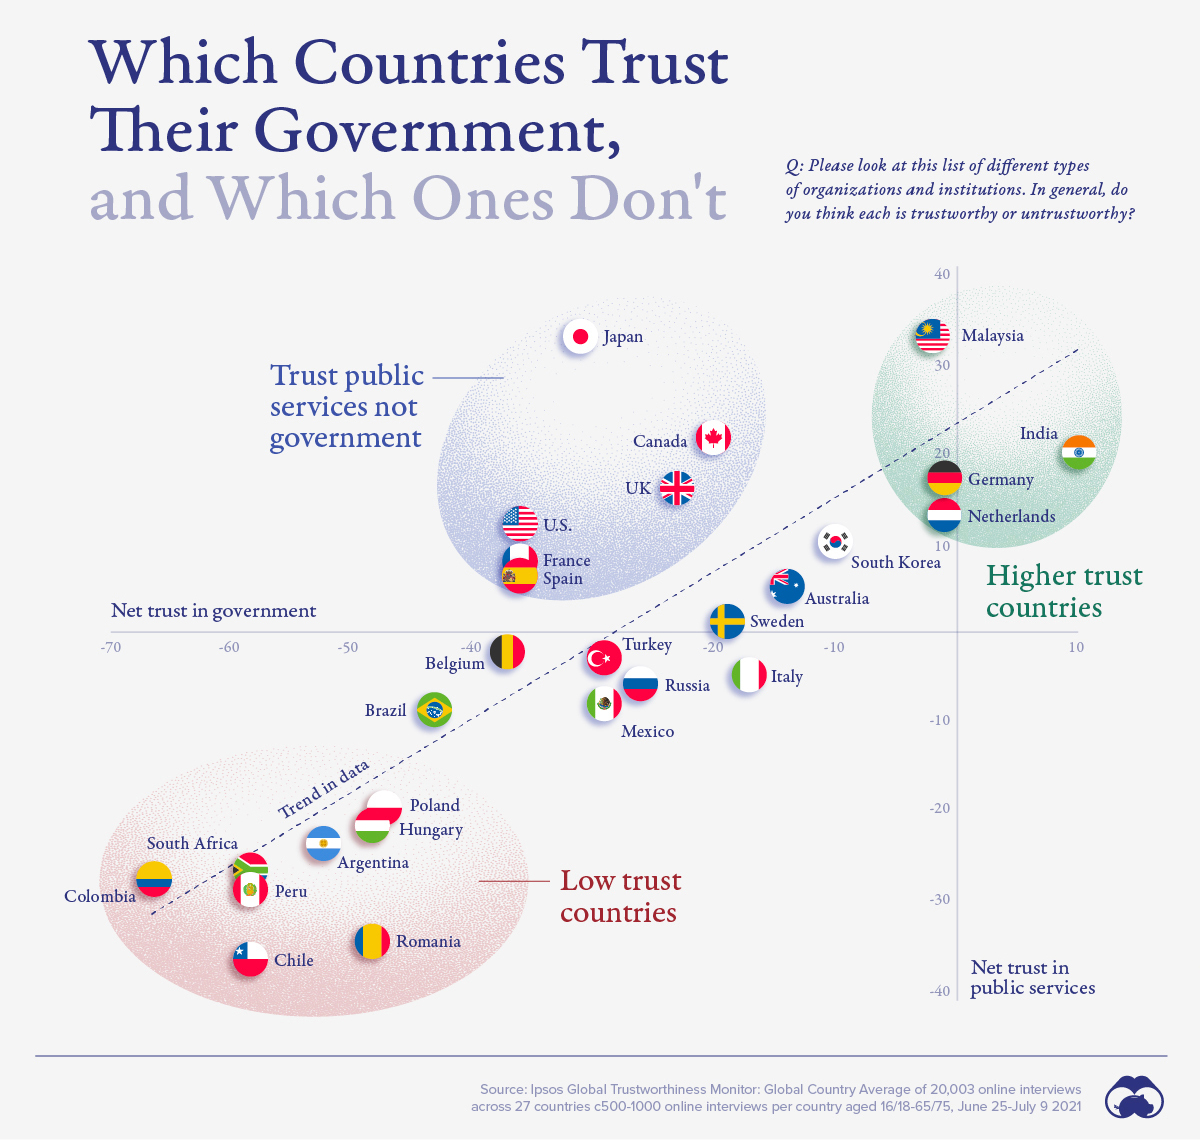 แผนภูมิวัดความไว้วางใจในรัฐบาลของประเทศต่างๆ